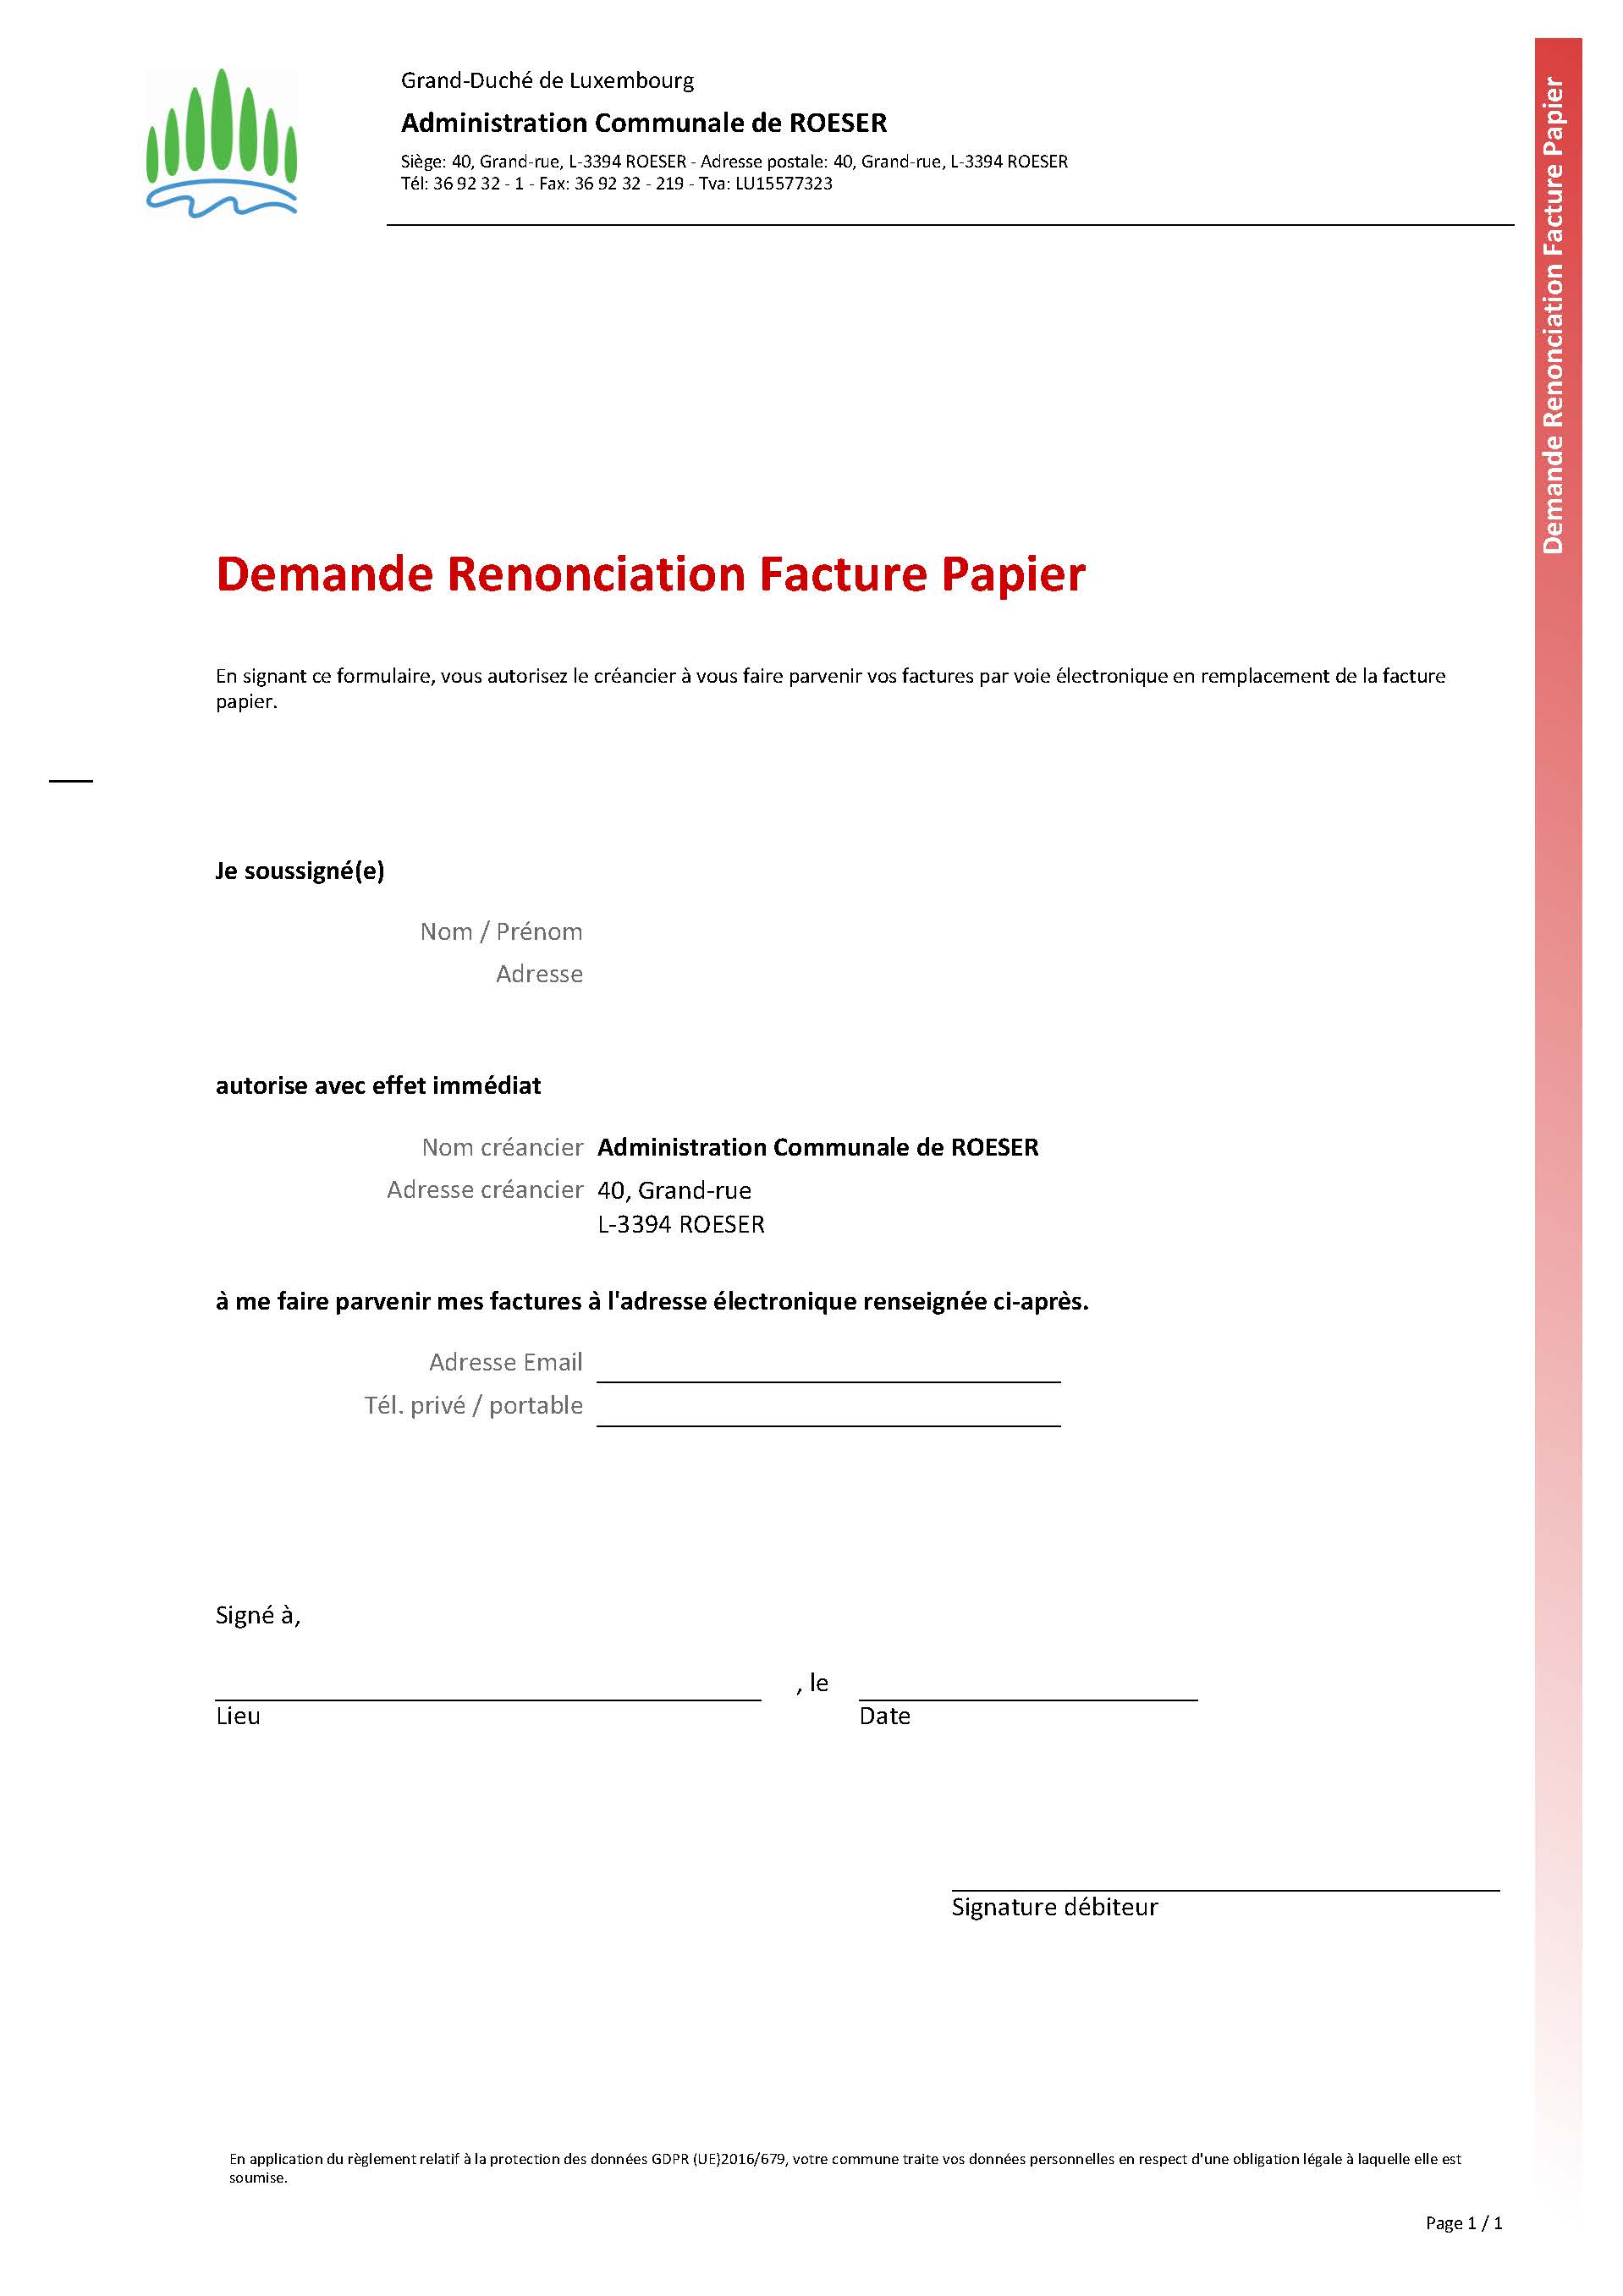 Demande Renonciation Facture Papier